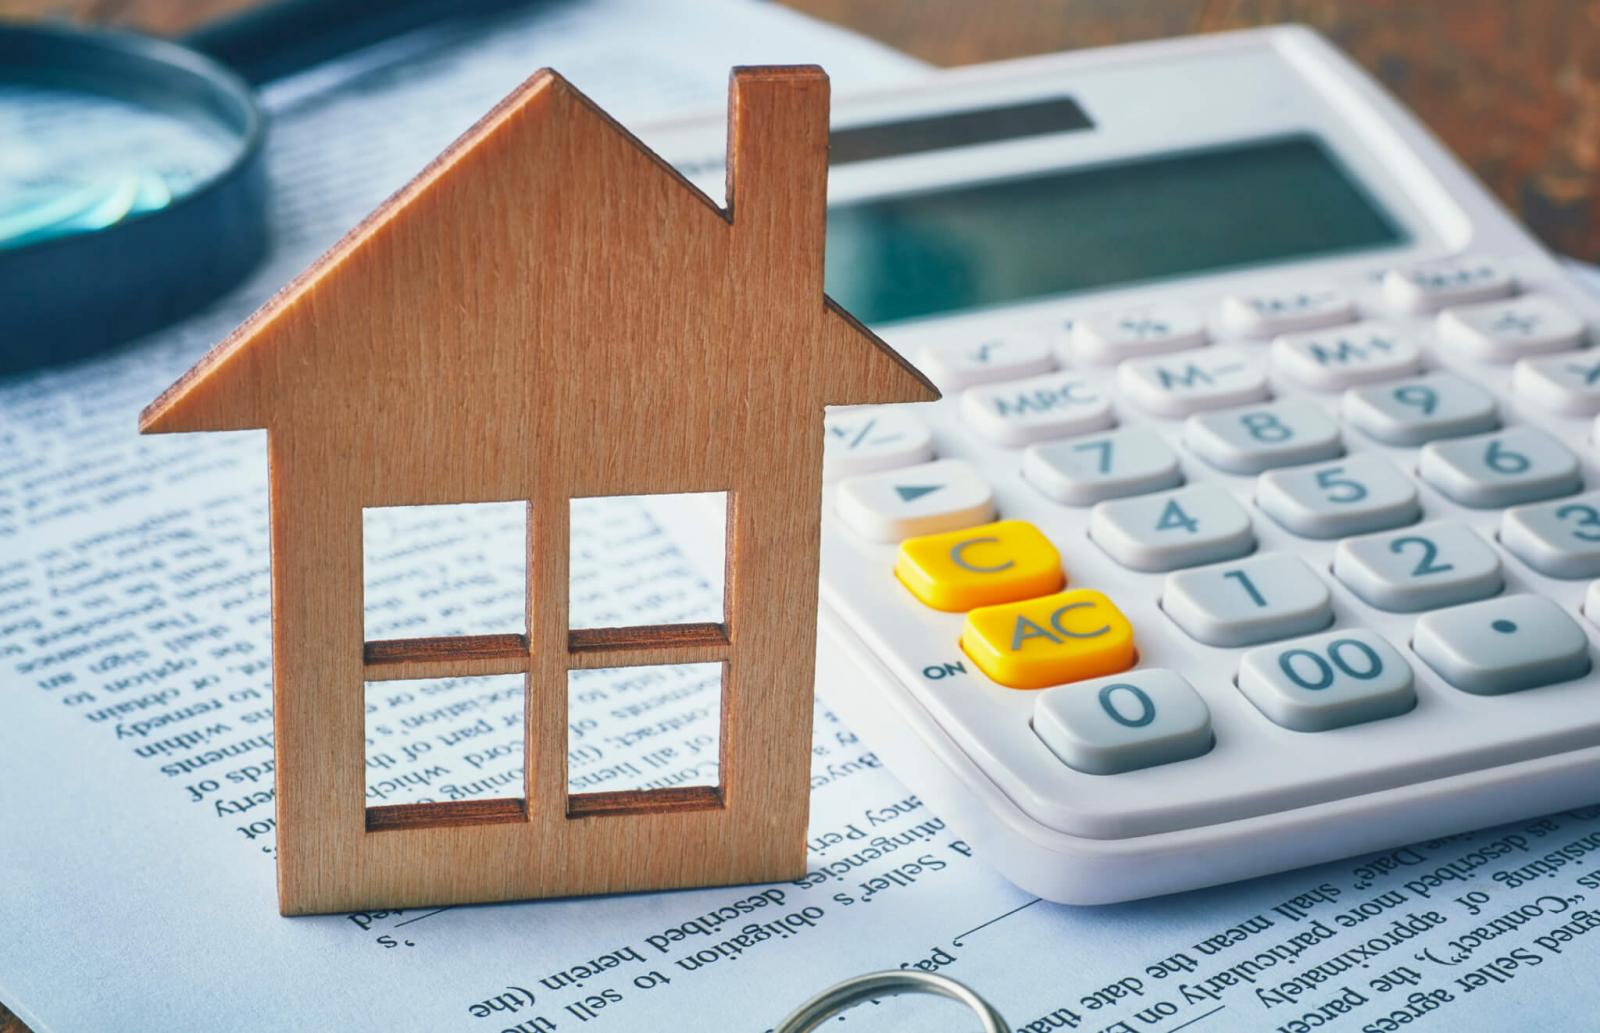 hình ảnh mô hình ngôi nhà, máy tính casio, tài liệu, kính lúp minh họa cho thuế thu nhập cá nhân khi bán nhà